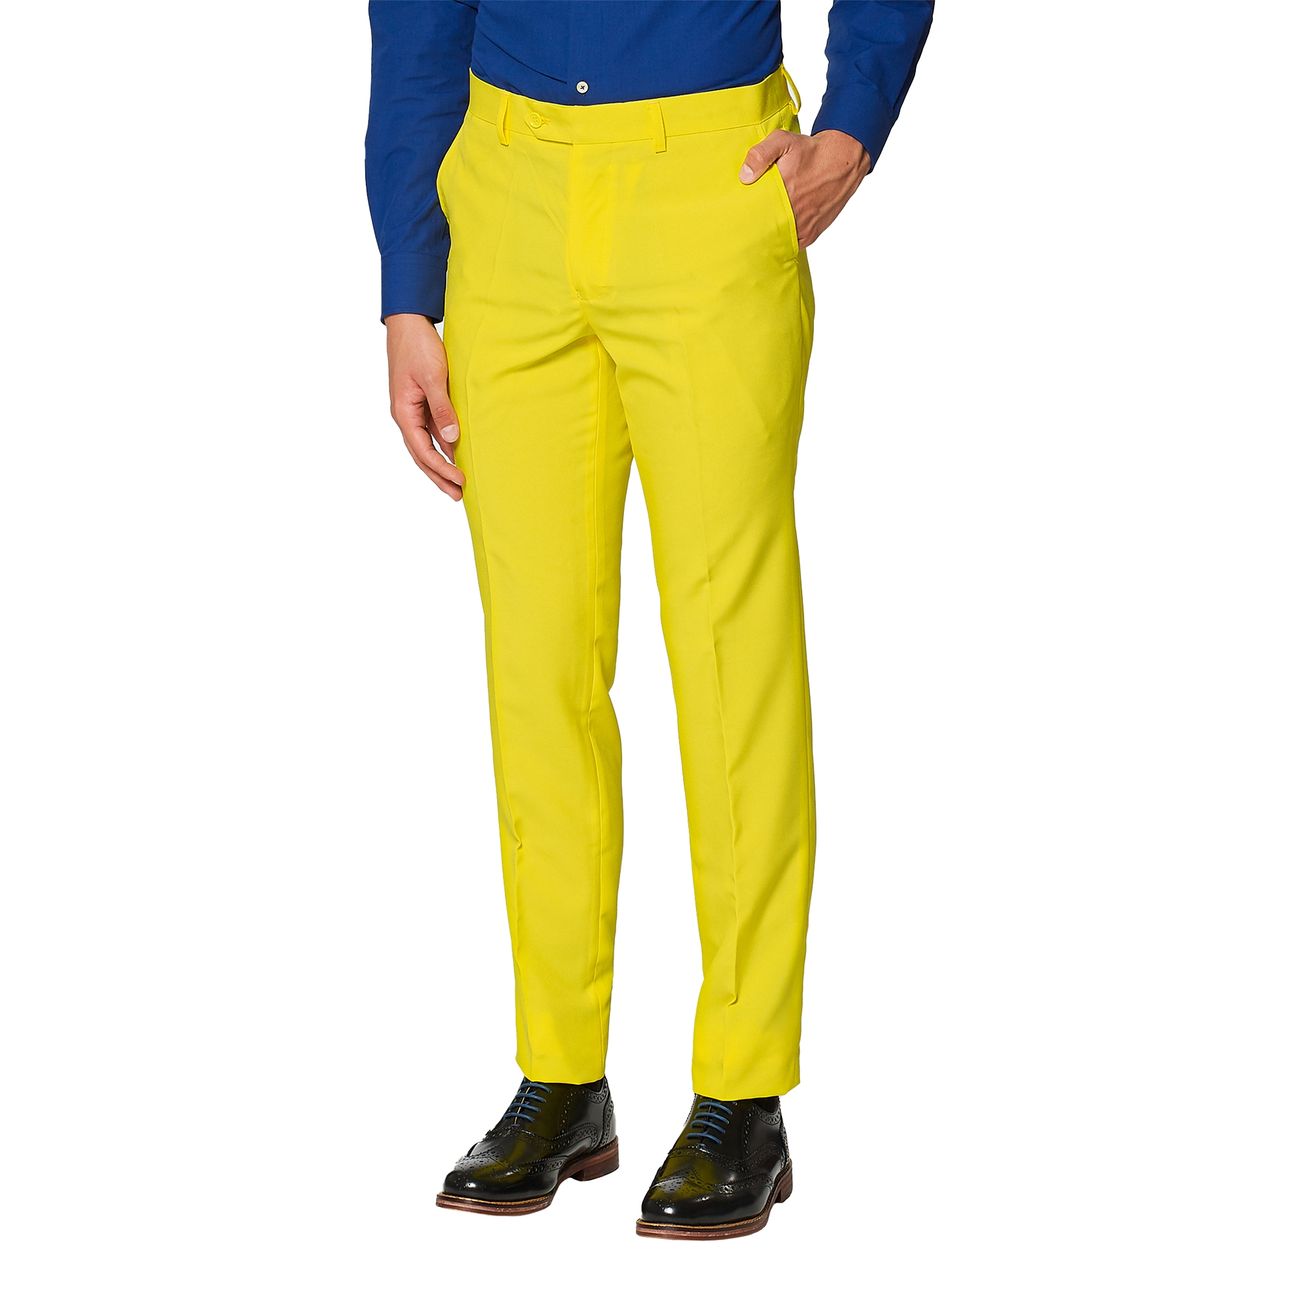 opposuits-yellow-fellow-kostym-30605-8